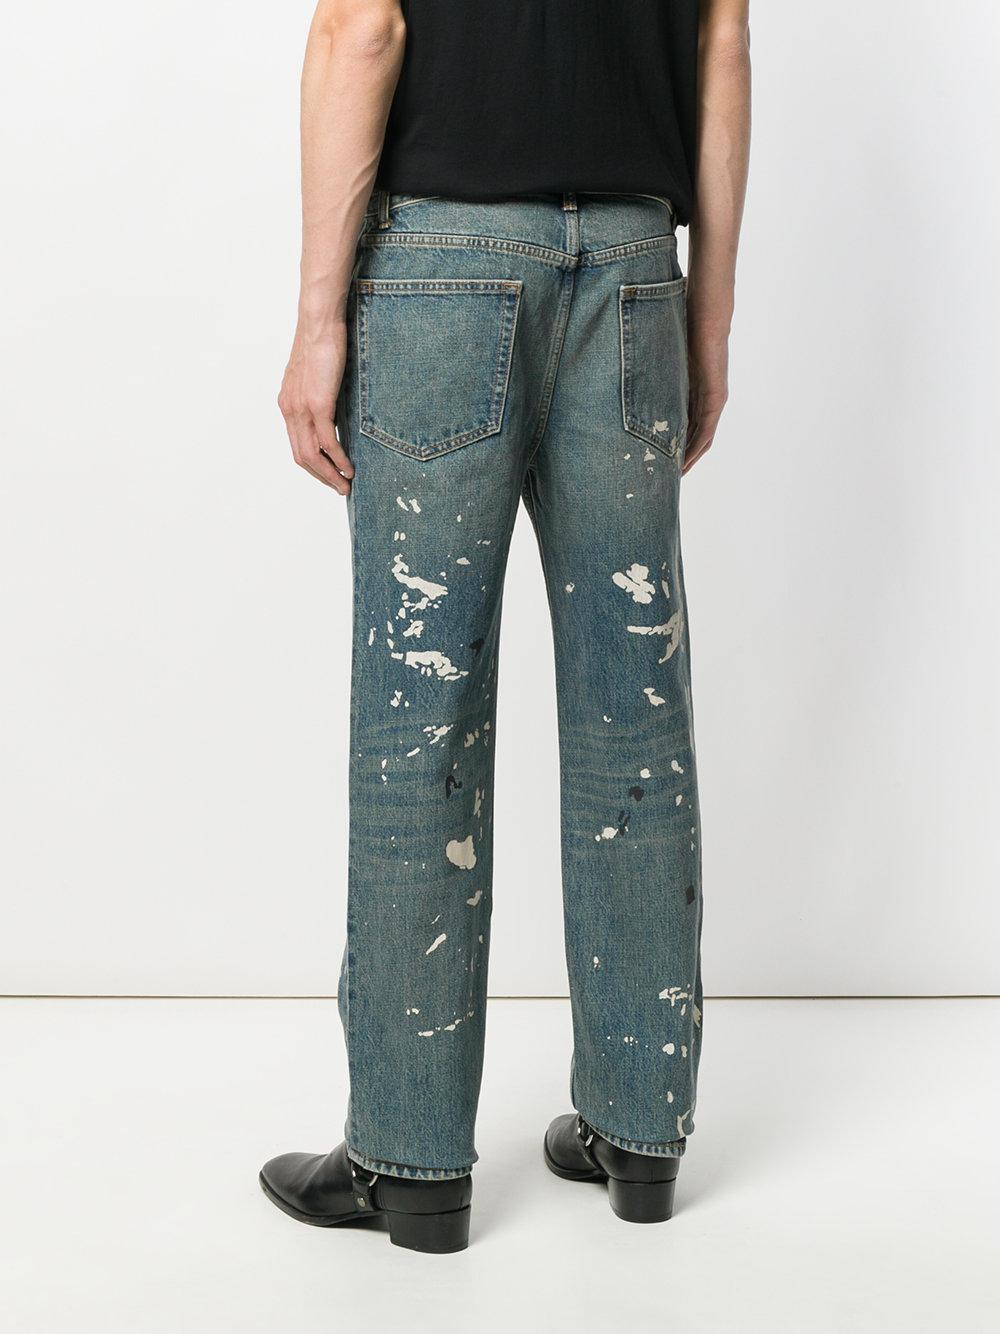 Helmut Lang Denim Paint Splatter Jeans in Blue for Men - Lyst